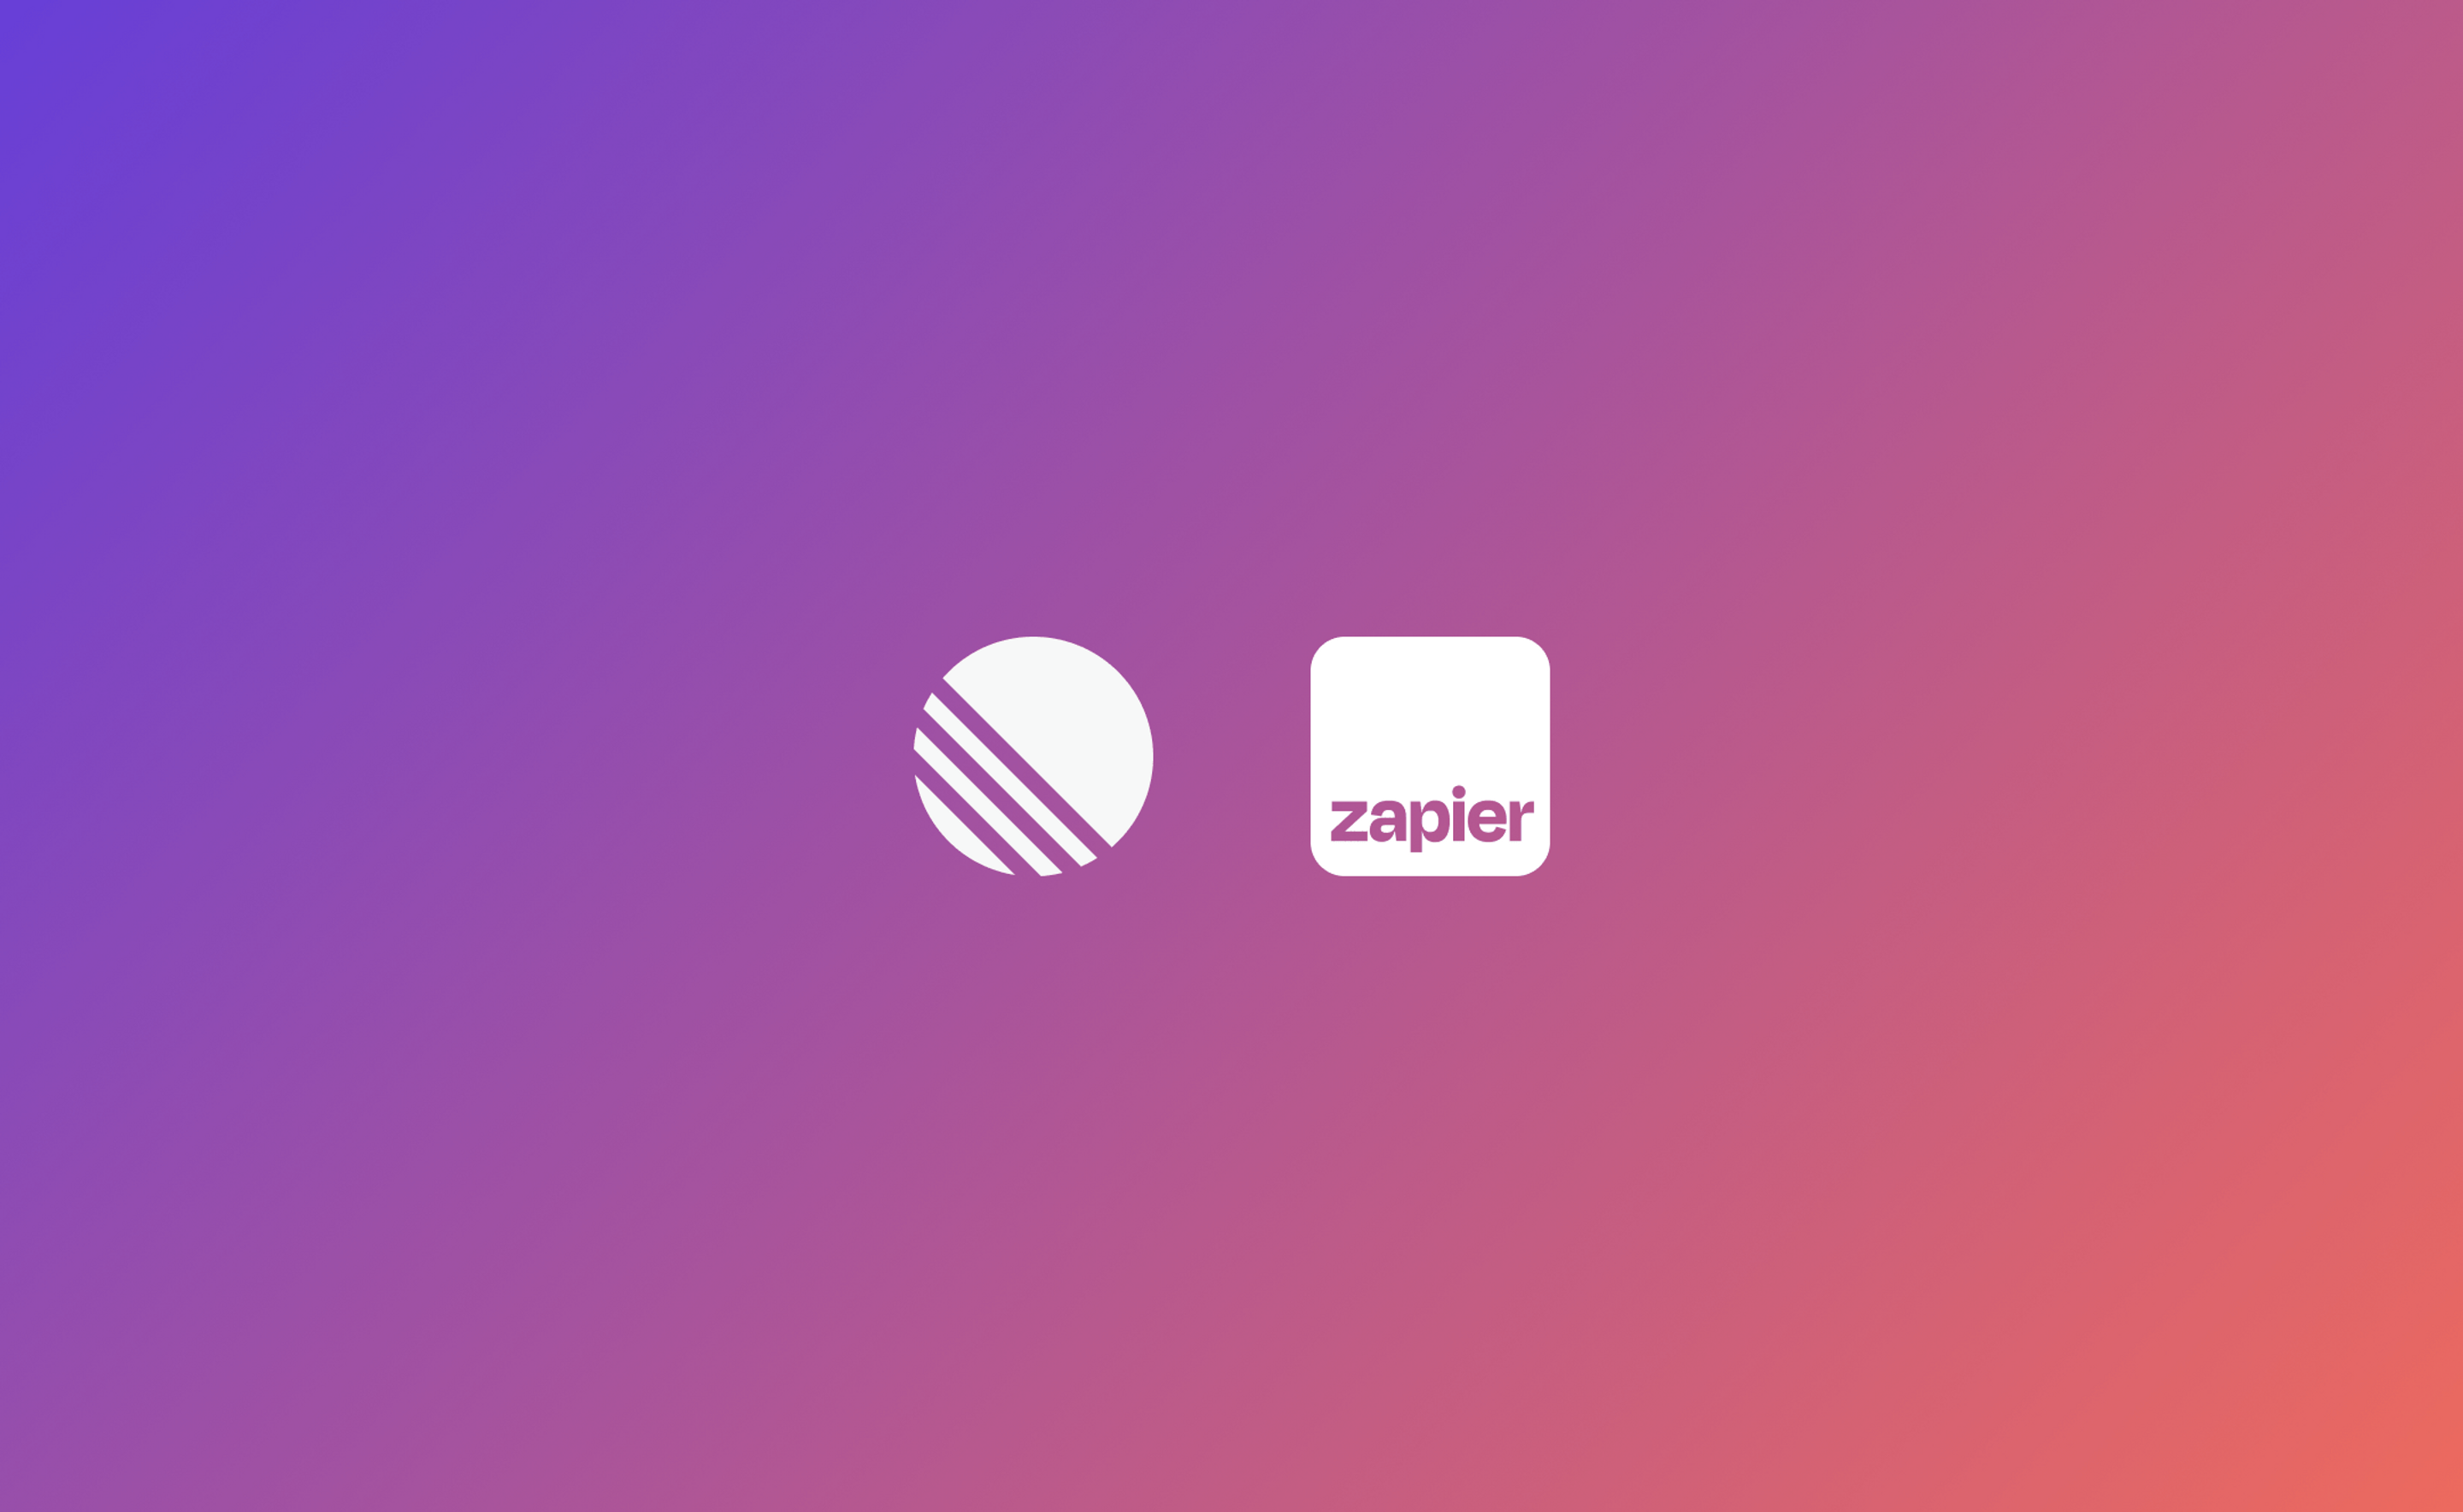 Linear and Zapier logos